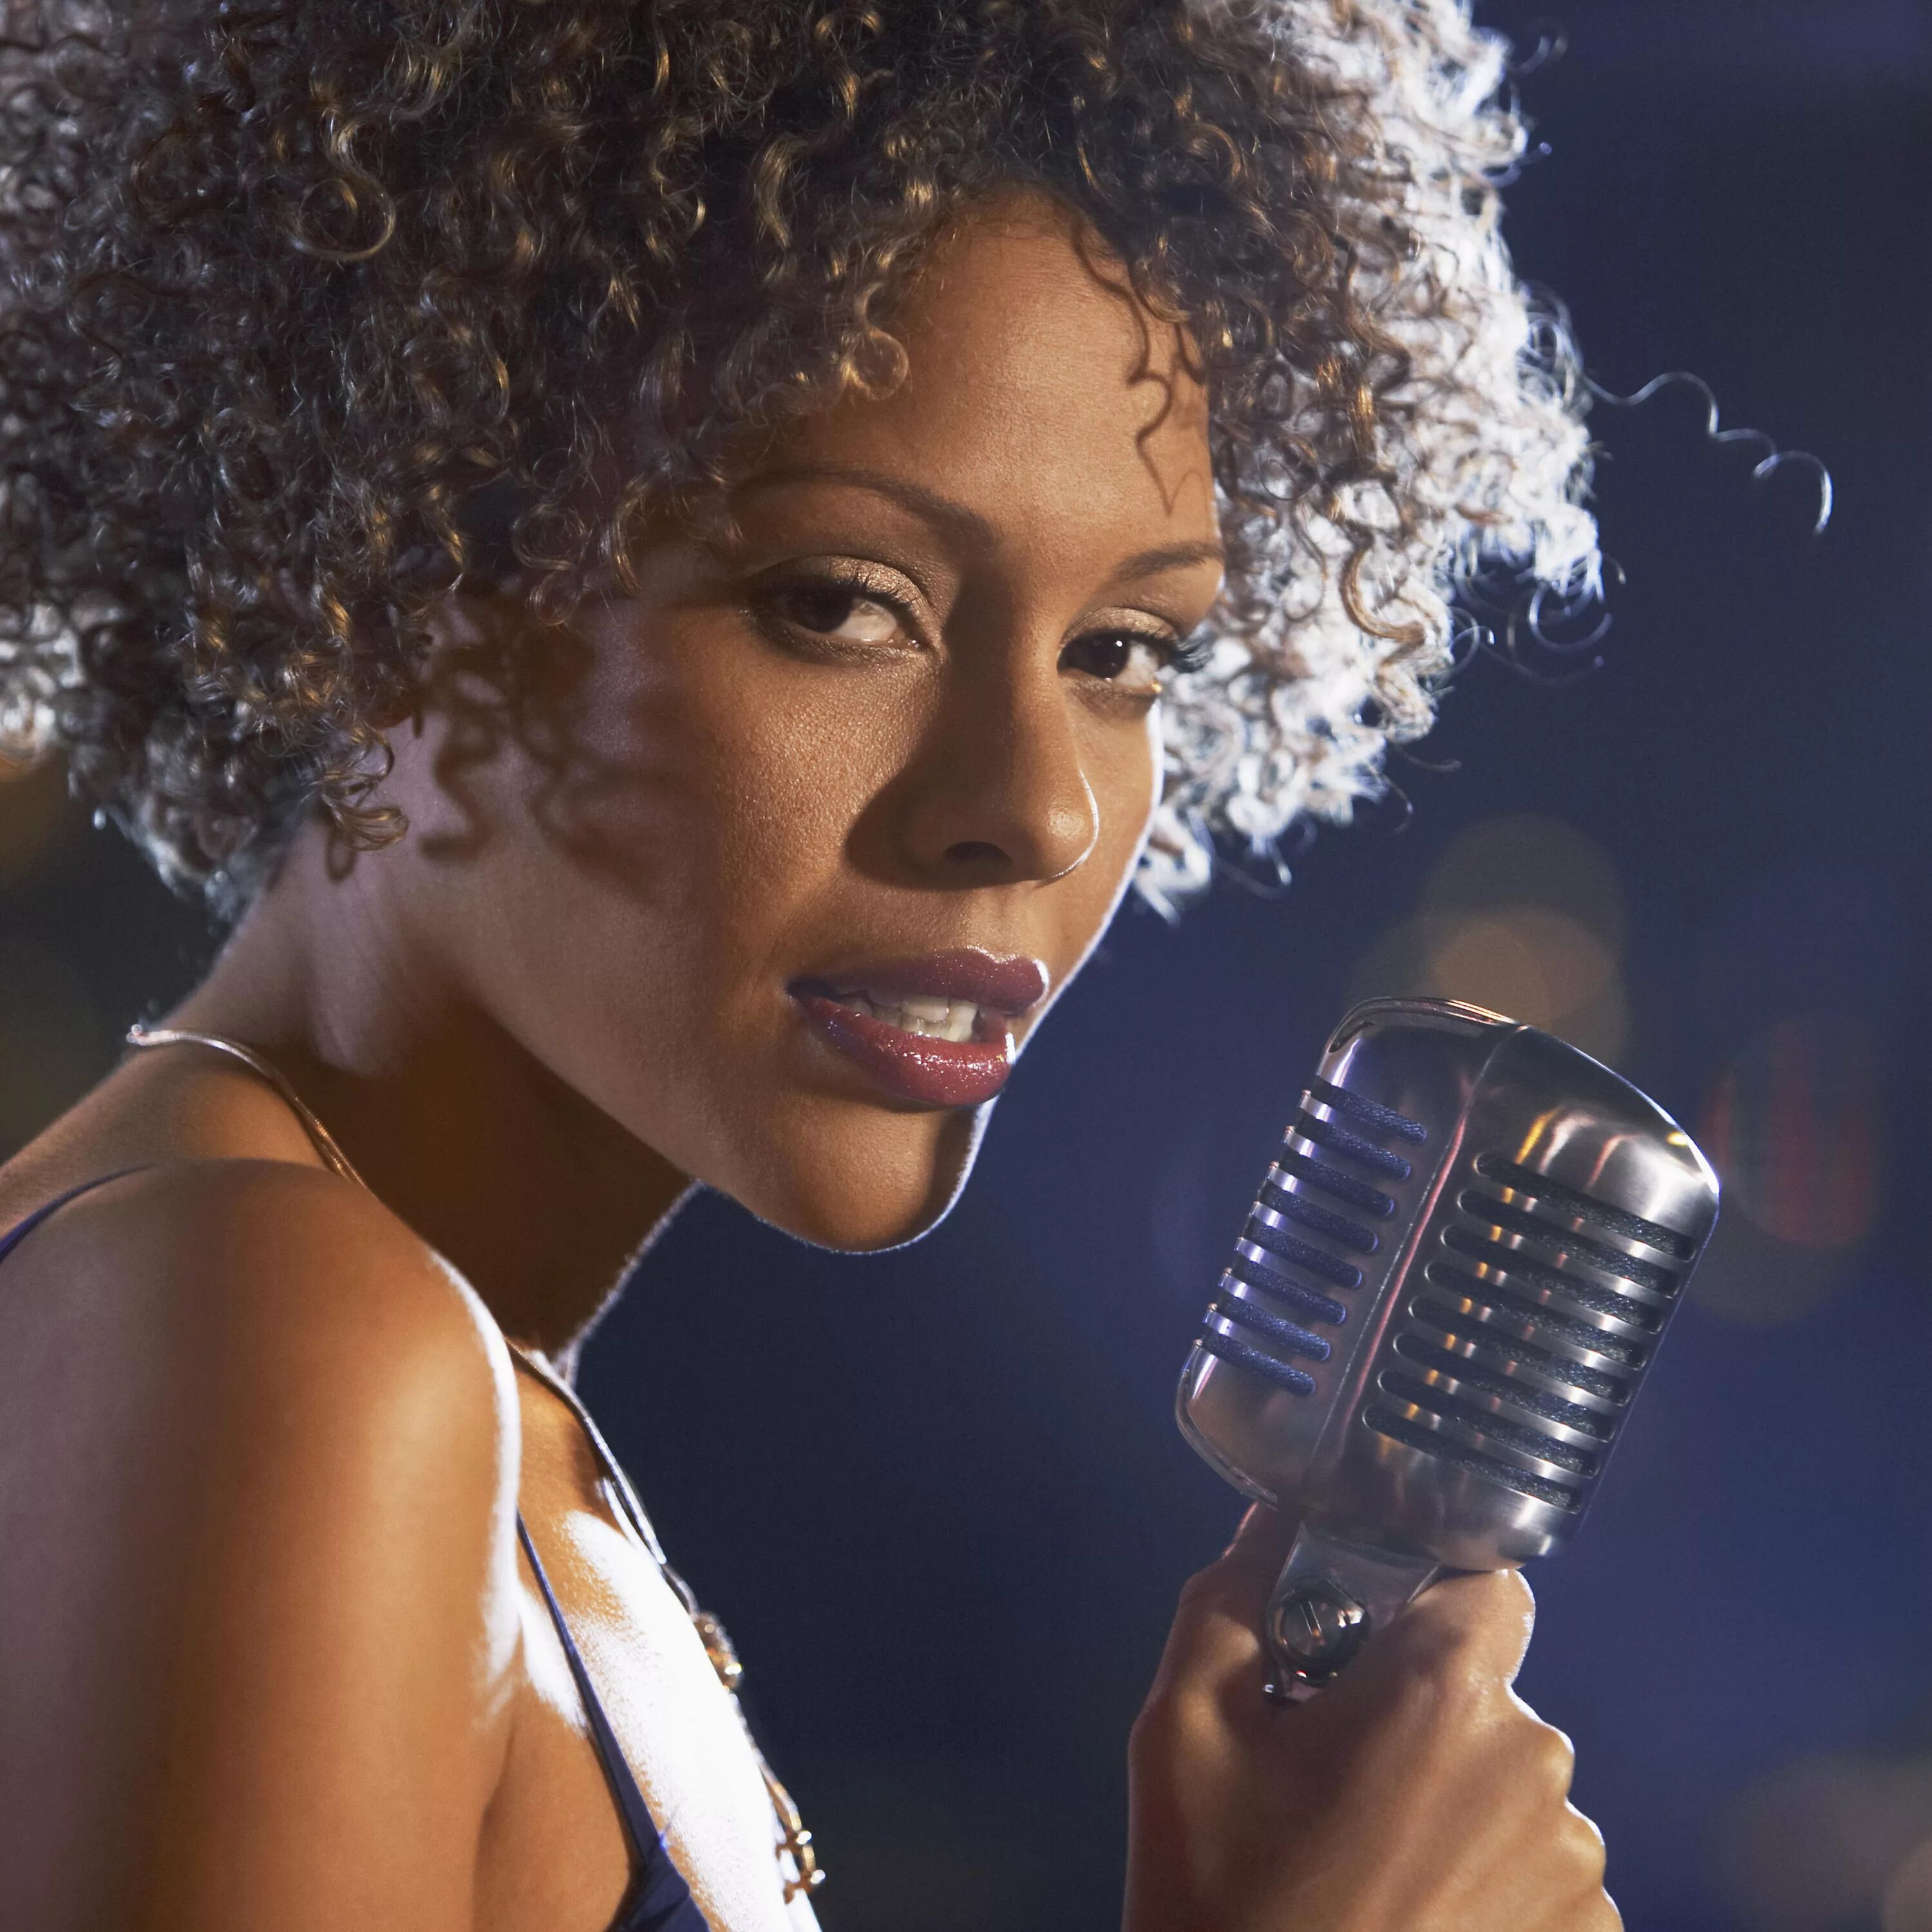 Джаз певица афроамериканка. Iyeoka певица. Афроамериканская джазовая певица Алекс. Соул певица афроамериканка.